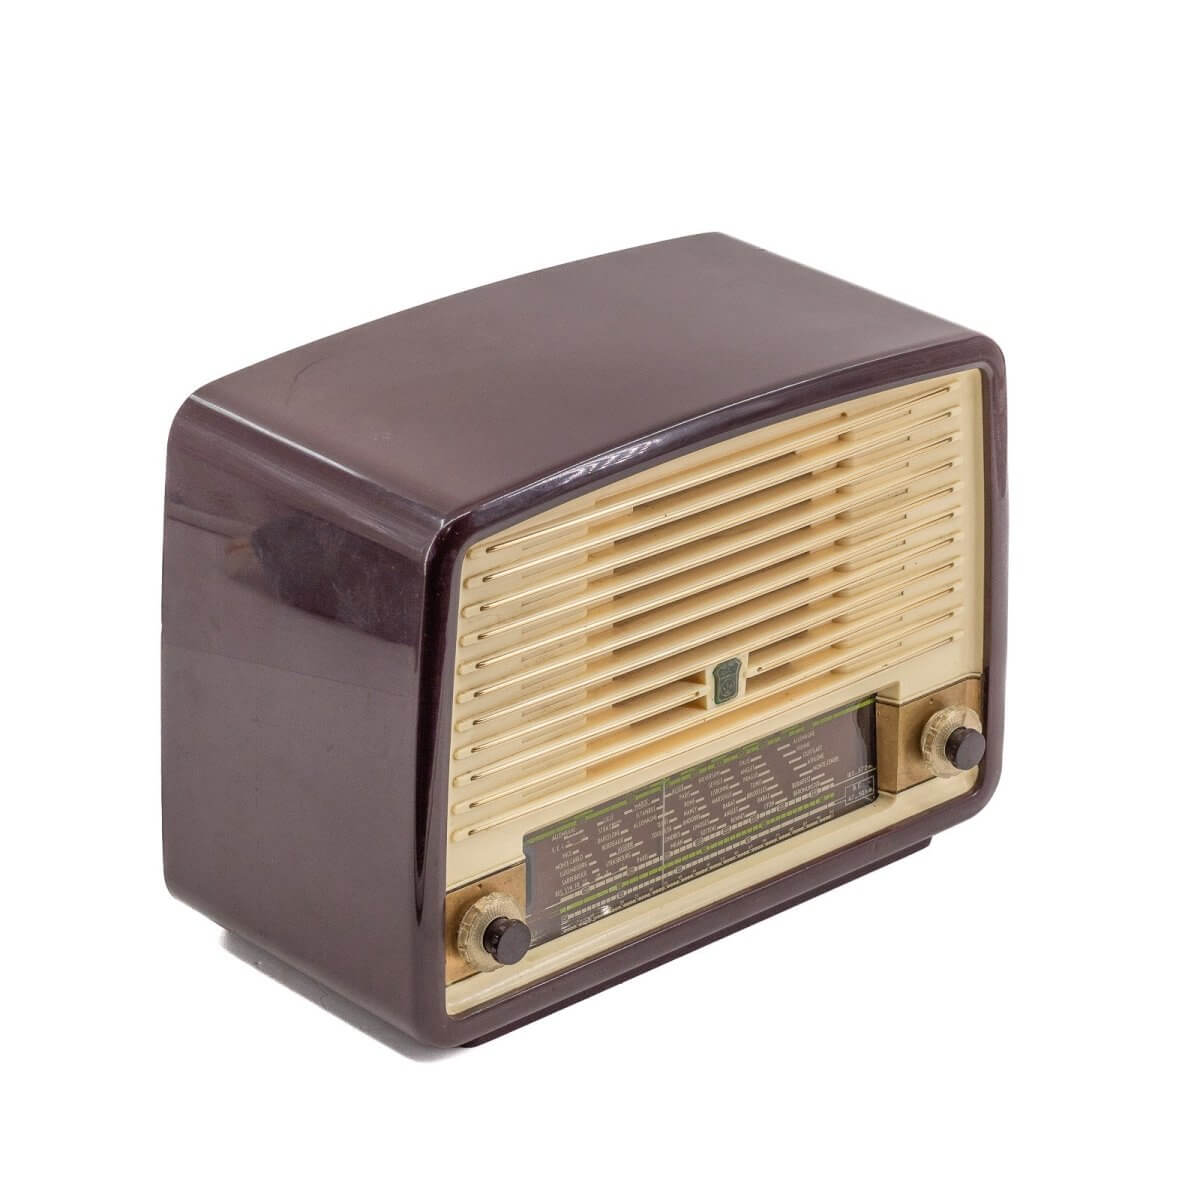 Radio Bluetooth Radiola Vintage 50’S-A.bsolument-enceintes-et-radios-vintage-bluetooth